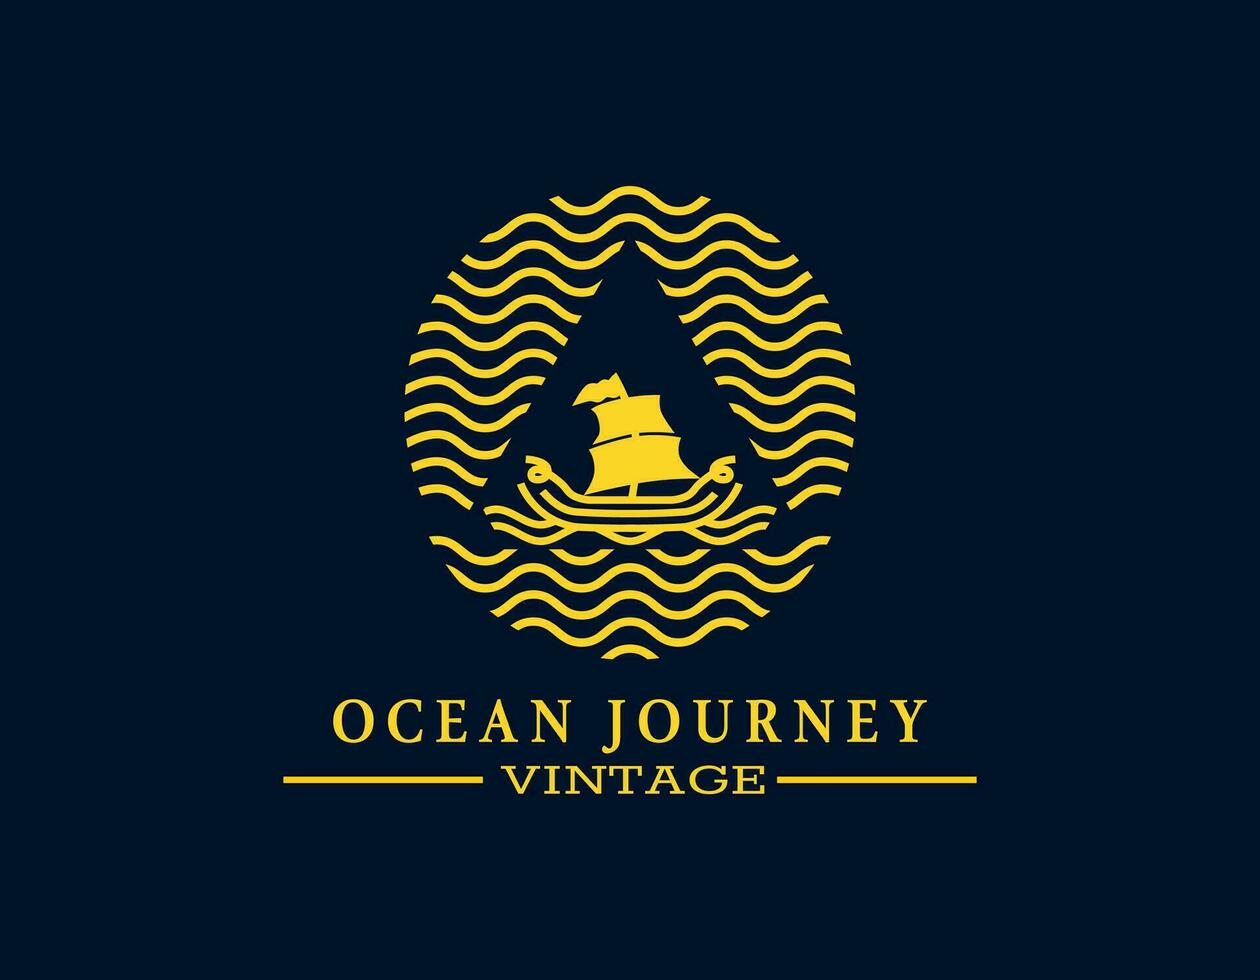 Clásico velero logo. el mínimo retro diseño de barco con amarillo o dorado. velero marina con el ondulado océano. elegante logo para café, playa, compañía, viajar, museo, mariscos, marina, pescador. vector